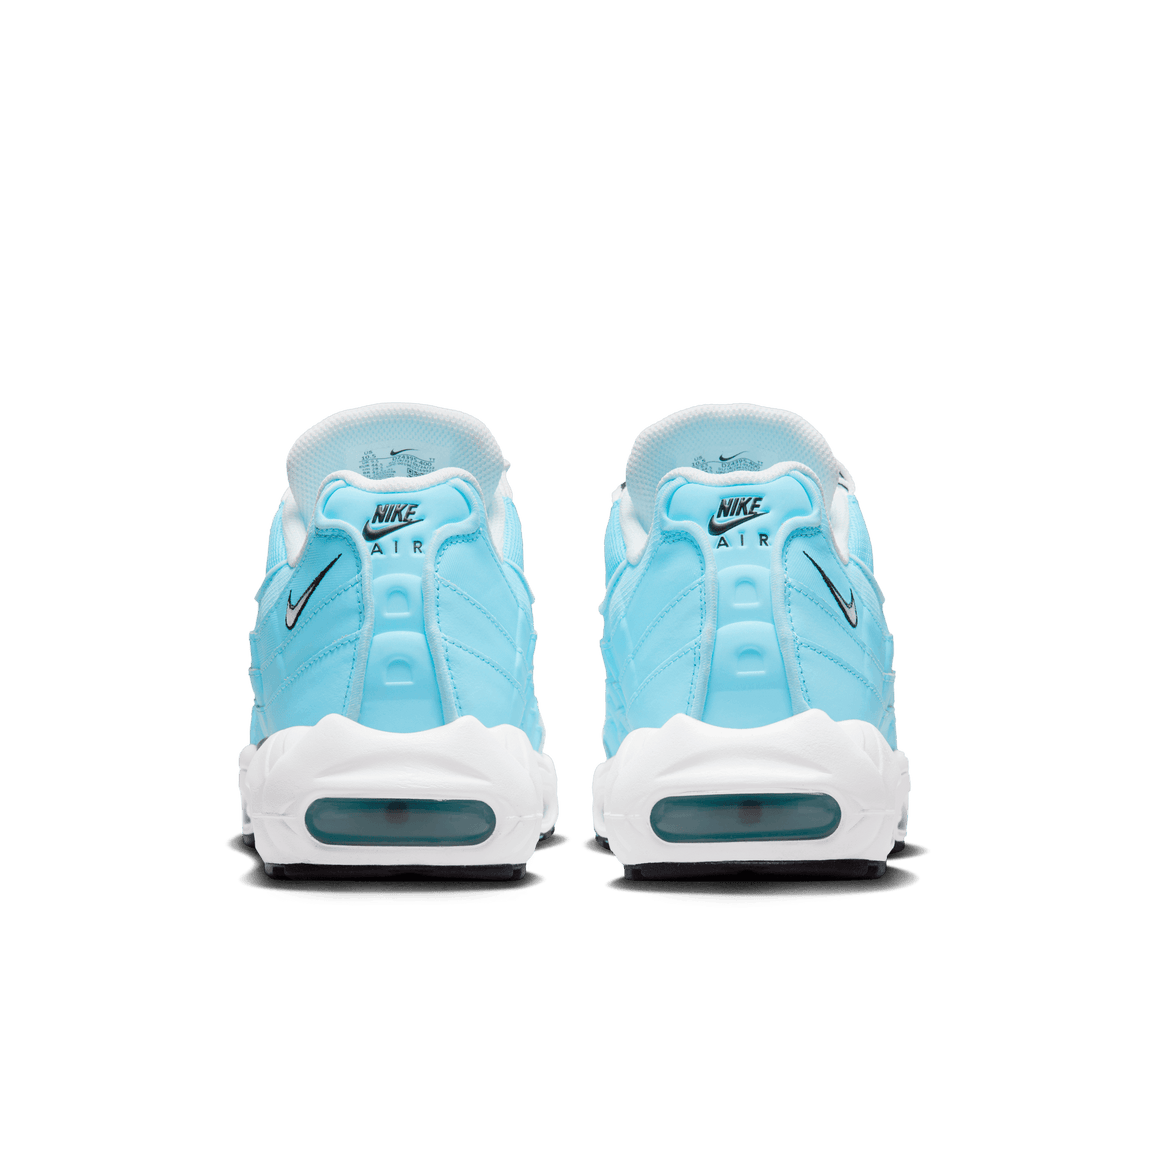 Nike Air Max 95 (Blue Chill/White-Black) - Nike Air Max 95 (Blue Chill/White-Black) - 